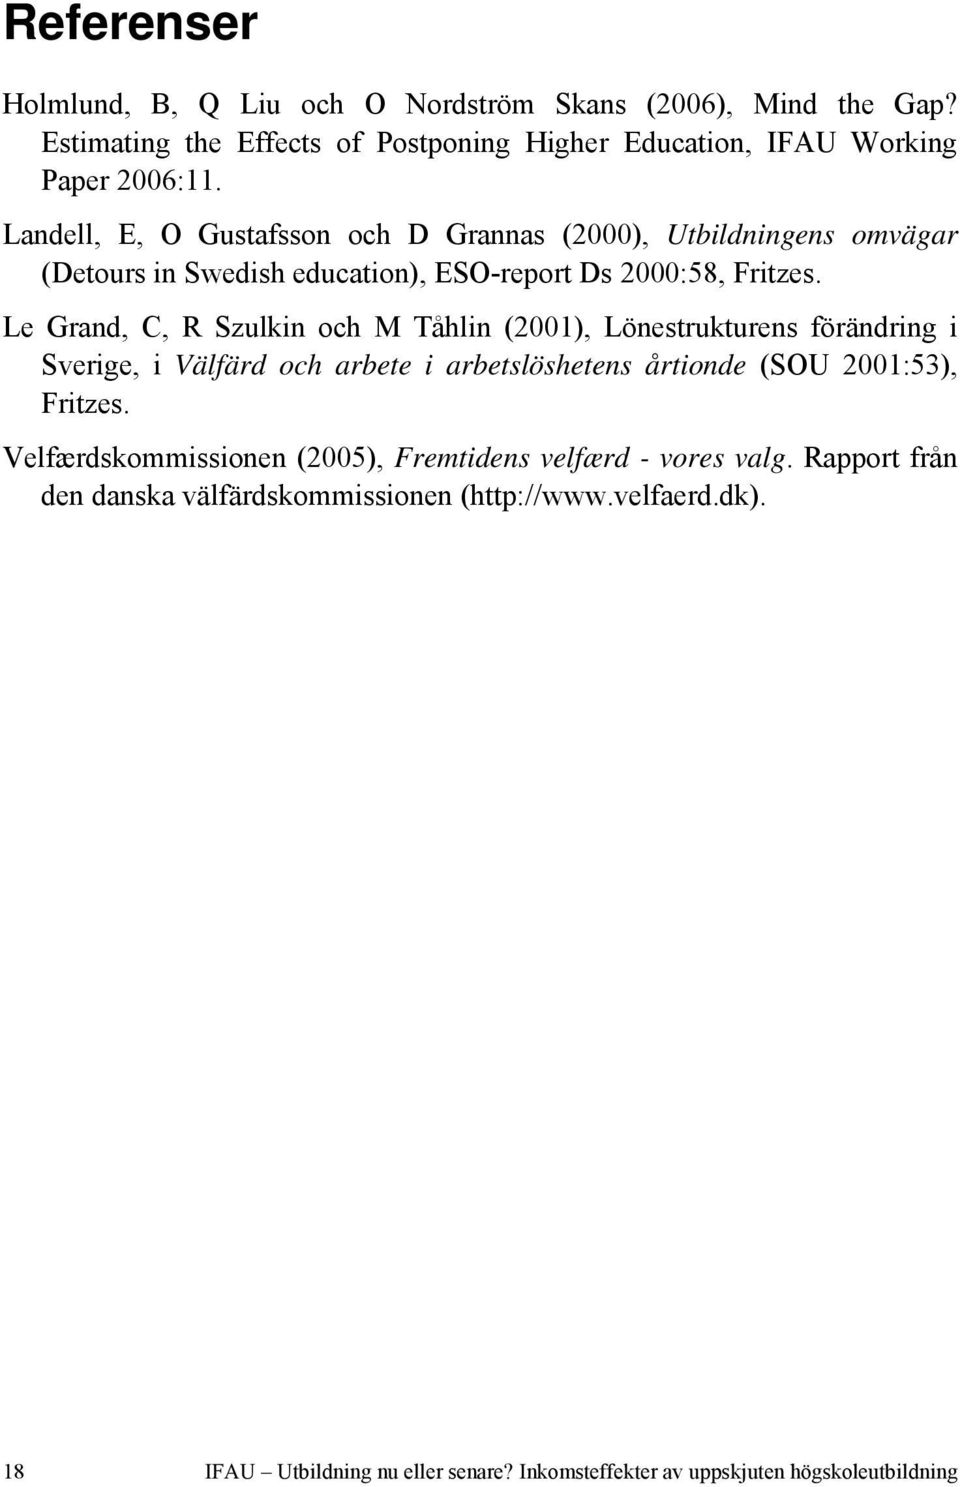 Le Grand, C, R Szulkin och M Tåhlin (2001), Lönestrukturens förändring i Sverige, i Välfärd och arbete i arbetslöshetens årtionde (SOU 2001:53), Fritzes.